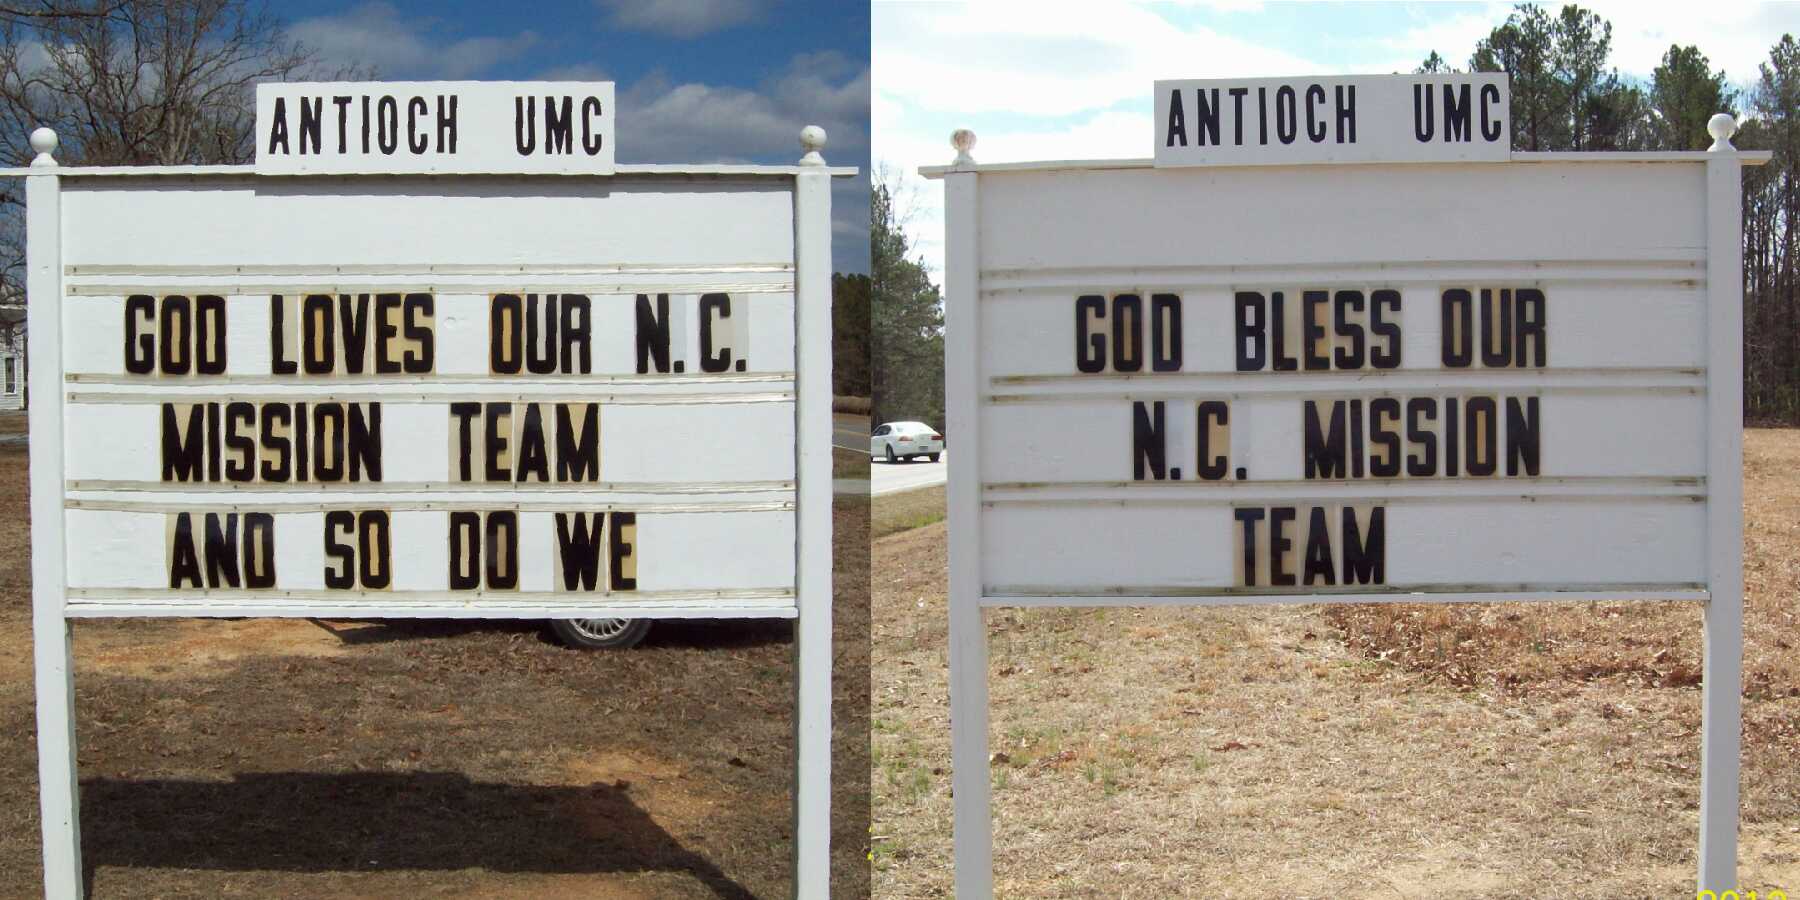 Antioch UMC